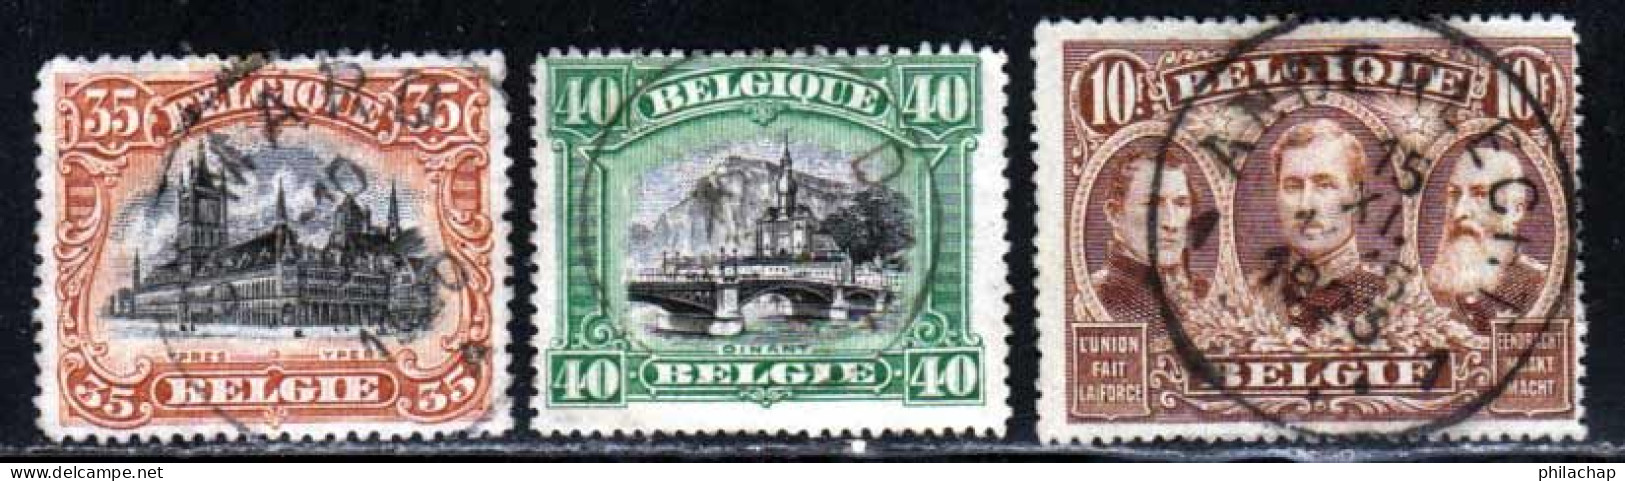 Belgique 1915 Yvert 142 - 143 - 149 (o) B Oblitere(s) - 1915-1920 Alberto I